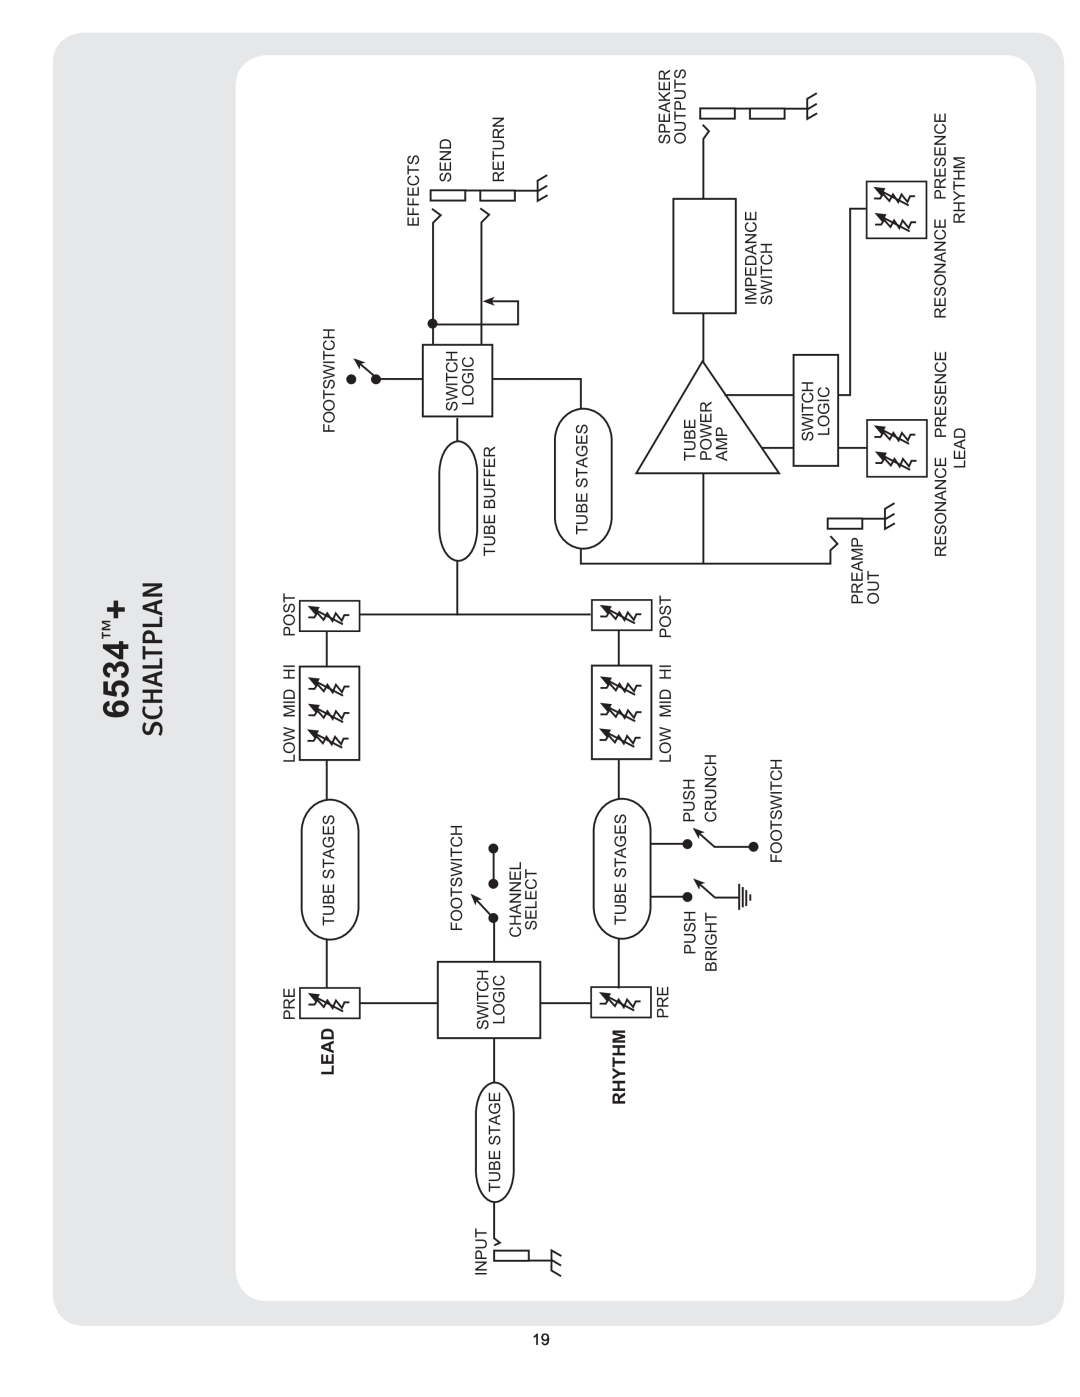 Peavey manual 4$-51, 6534Š+, Signal Flow Block Diagram 